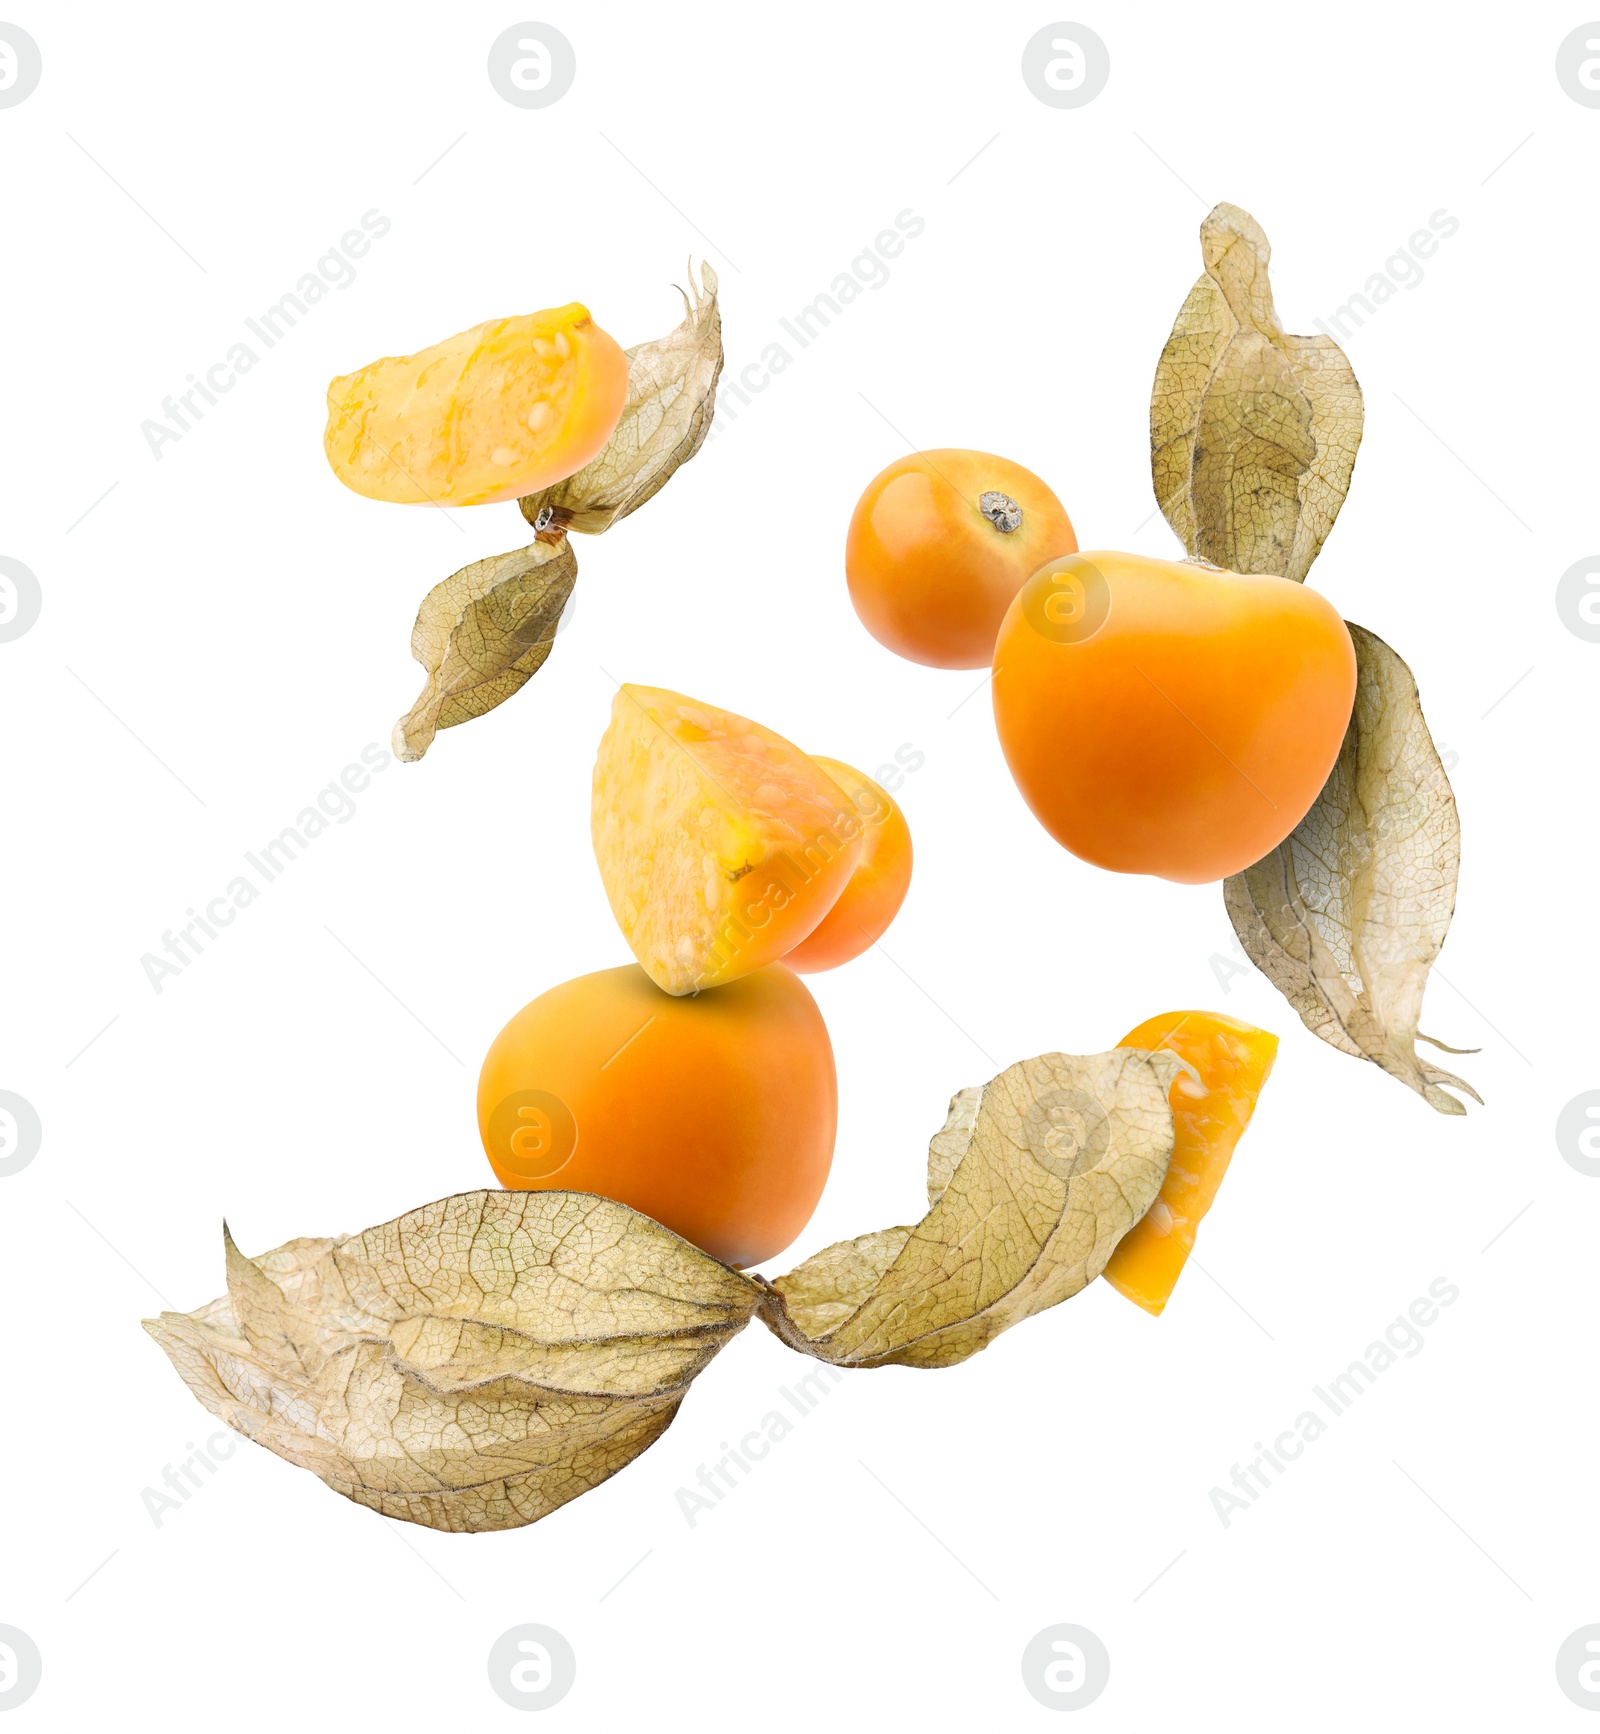 Image of Ripe orange physalis fruits with calyx falling on white background